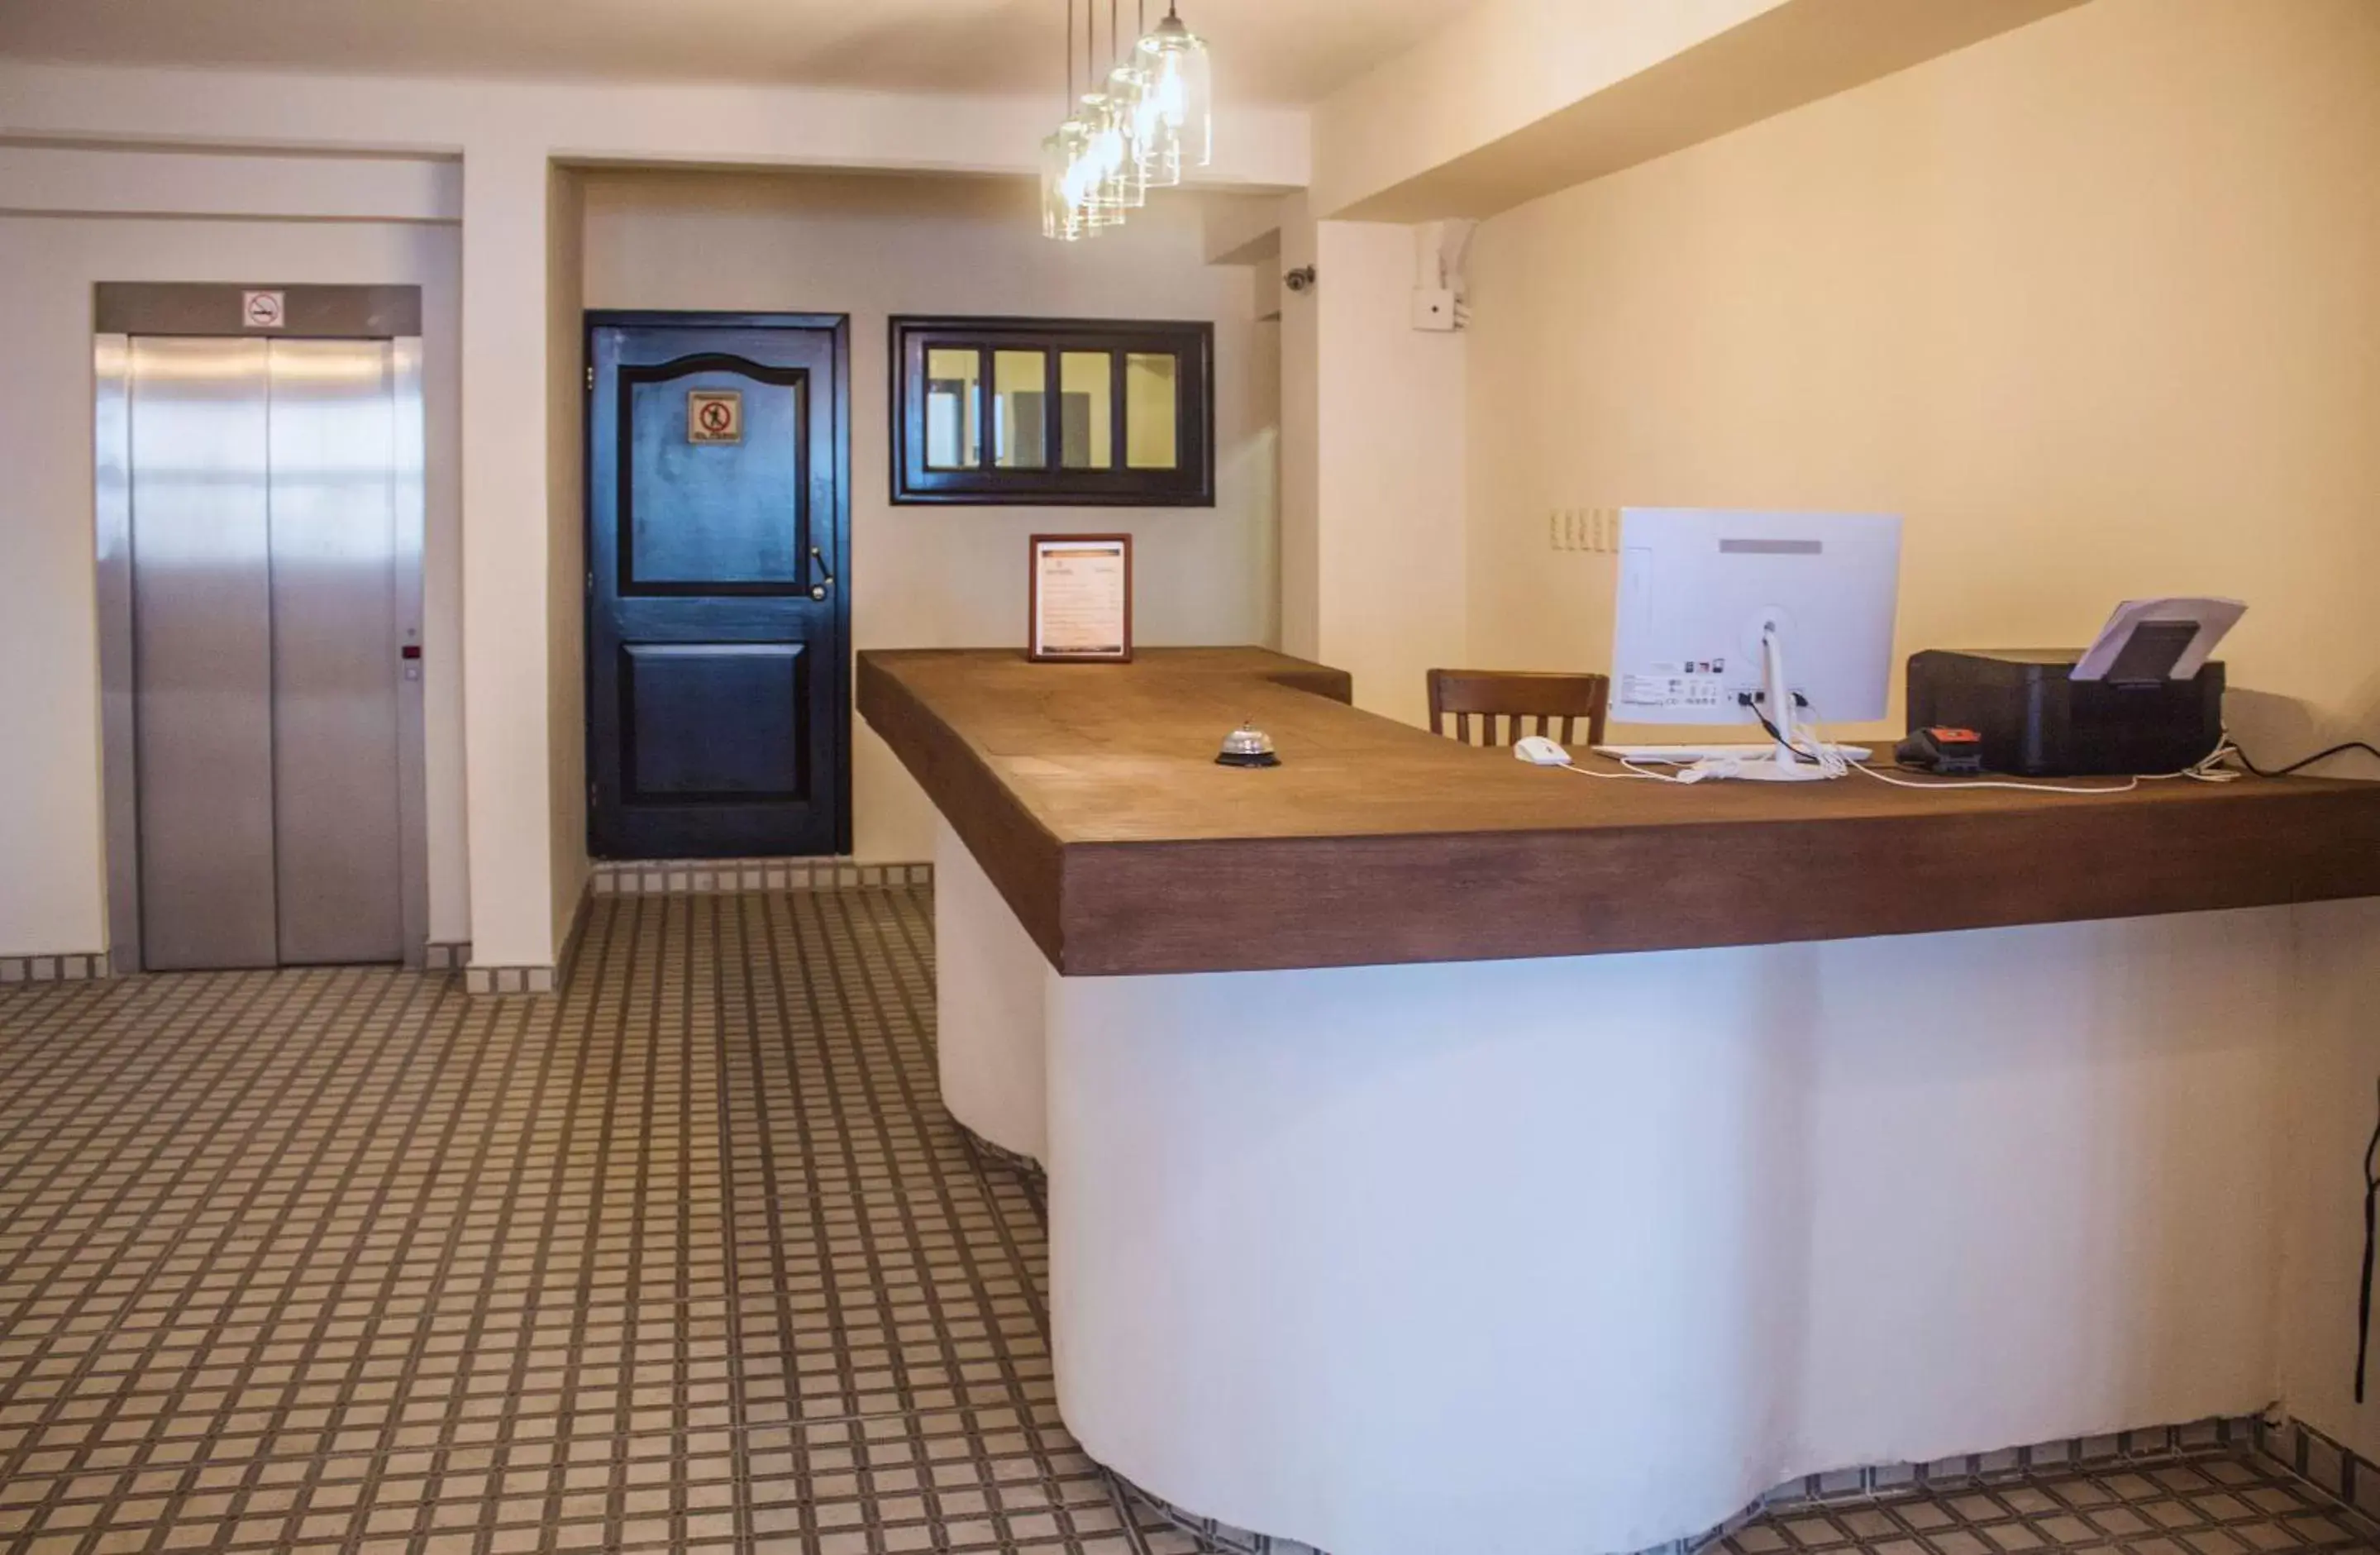 Lobby or reception, Lobby/Reception in Múcara hotel